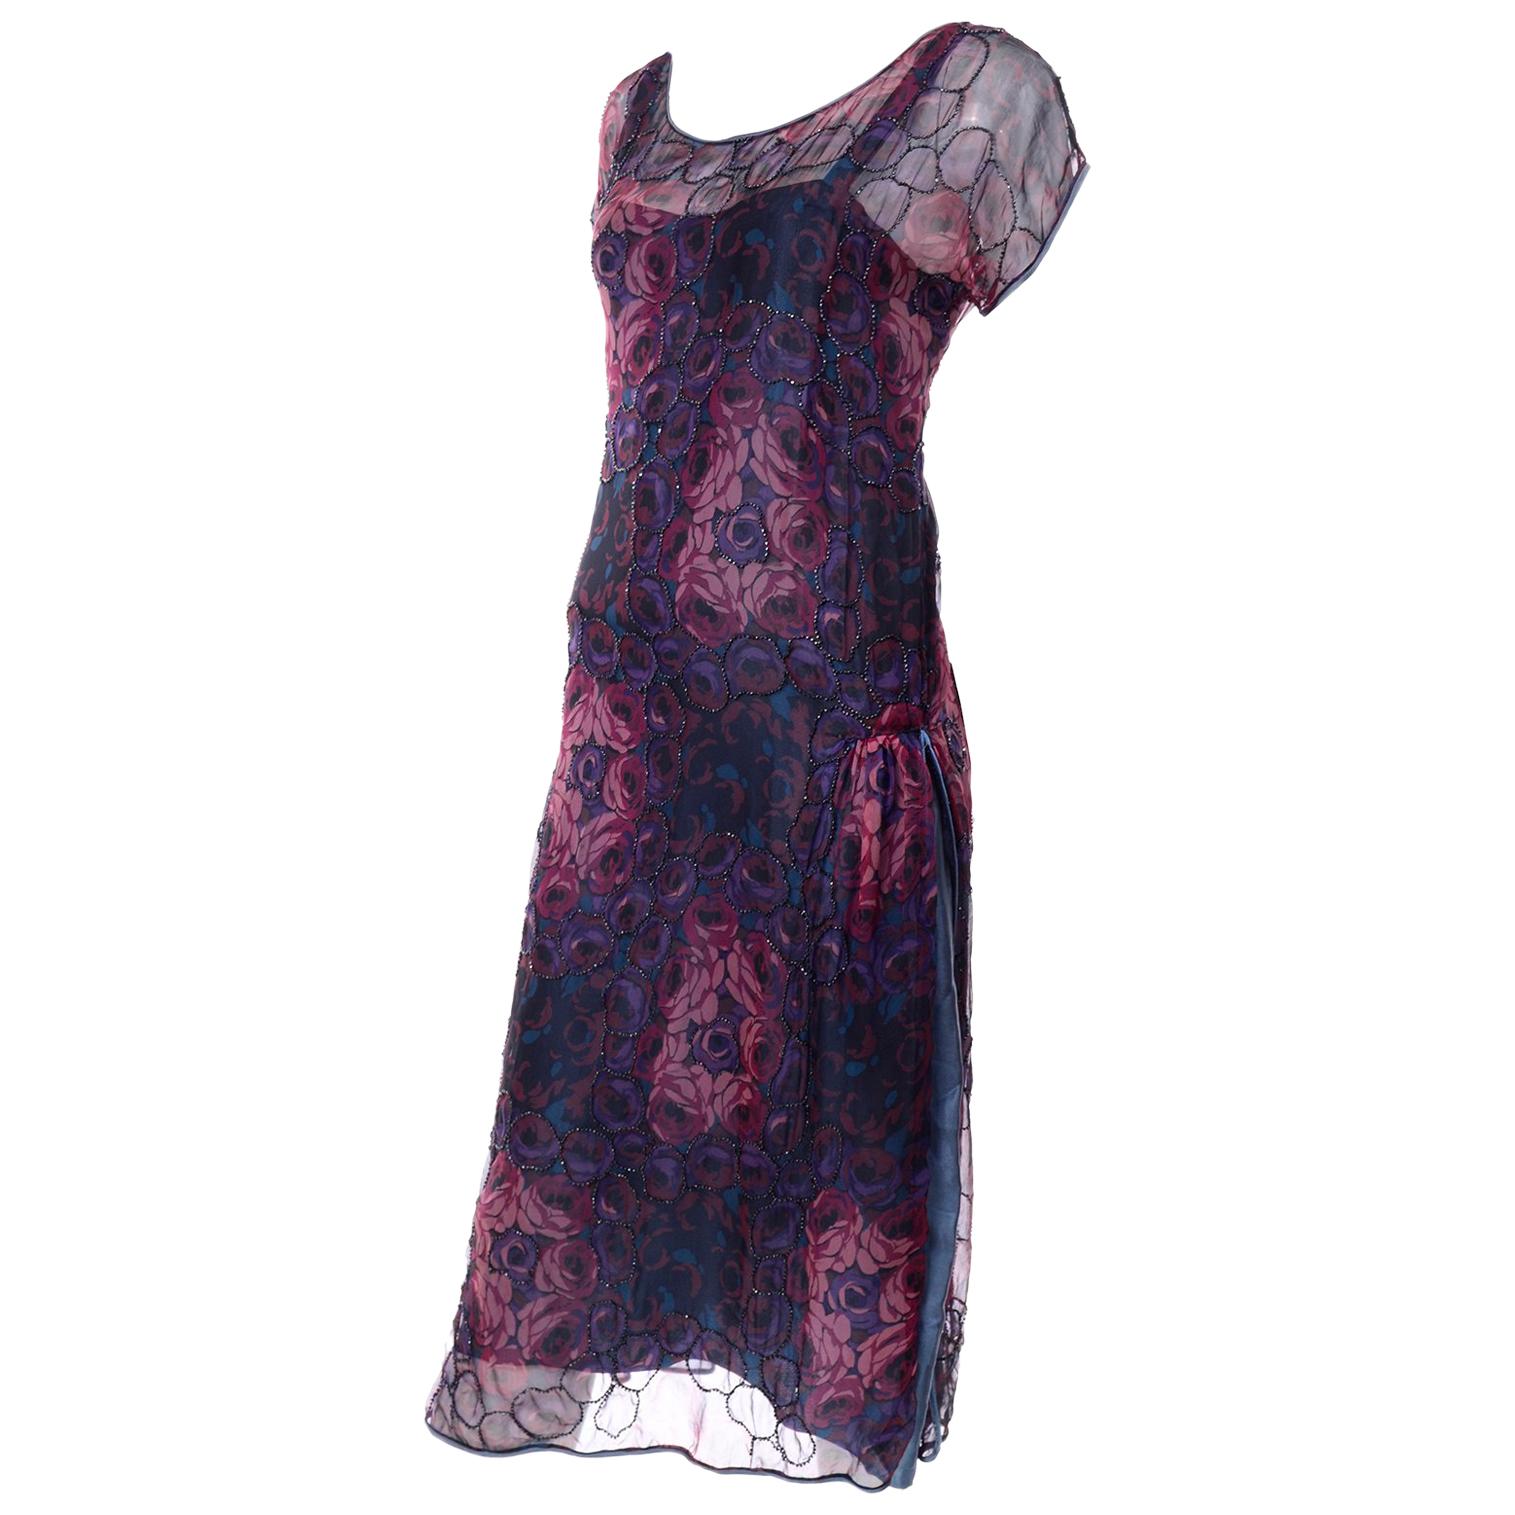 1920s Vintage Beaded Sheer Floral Silk Dress W Under dress Rose Pattern Design